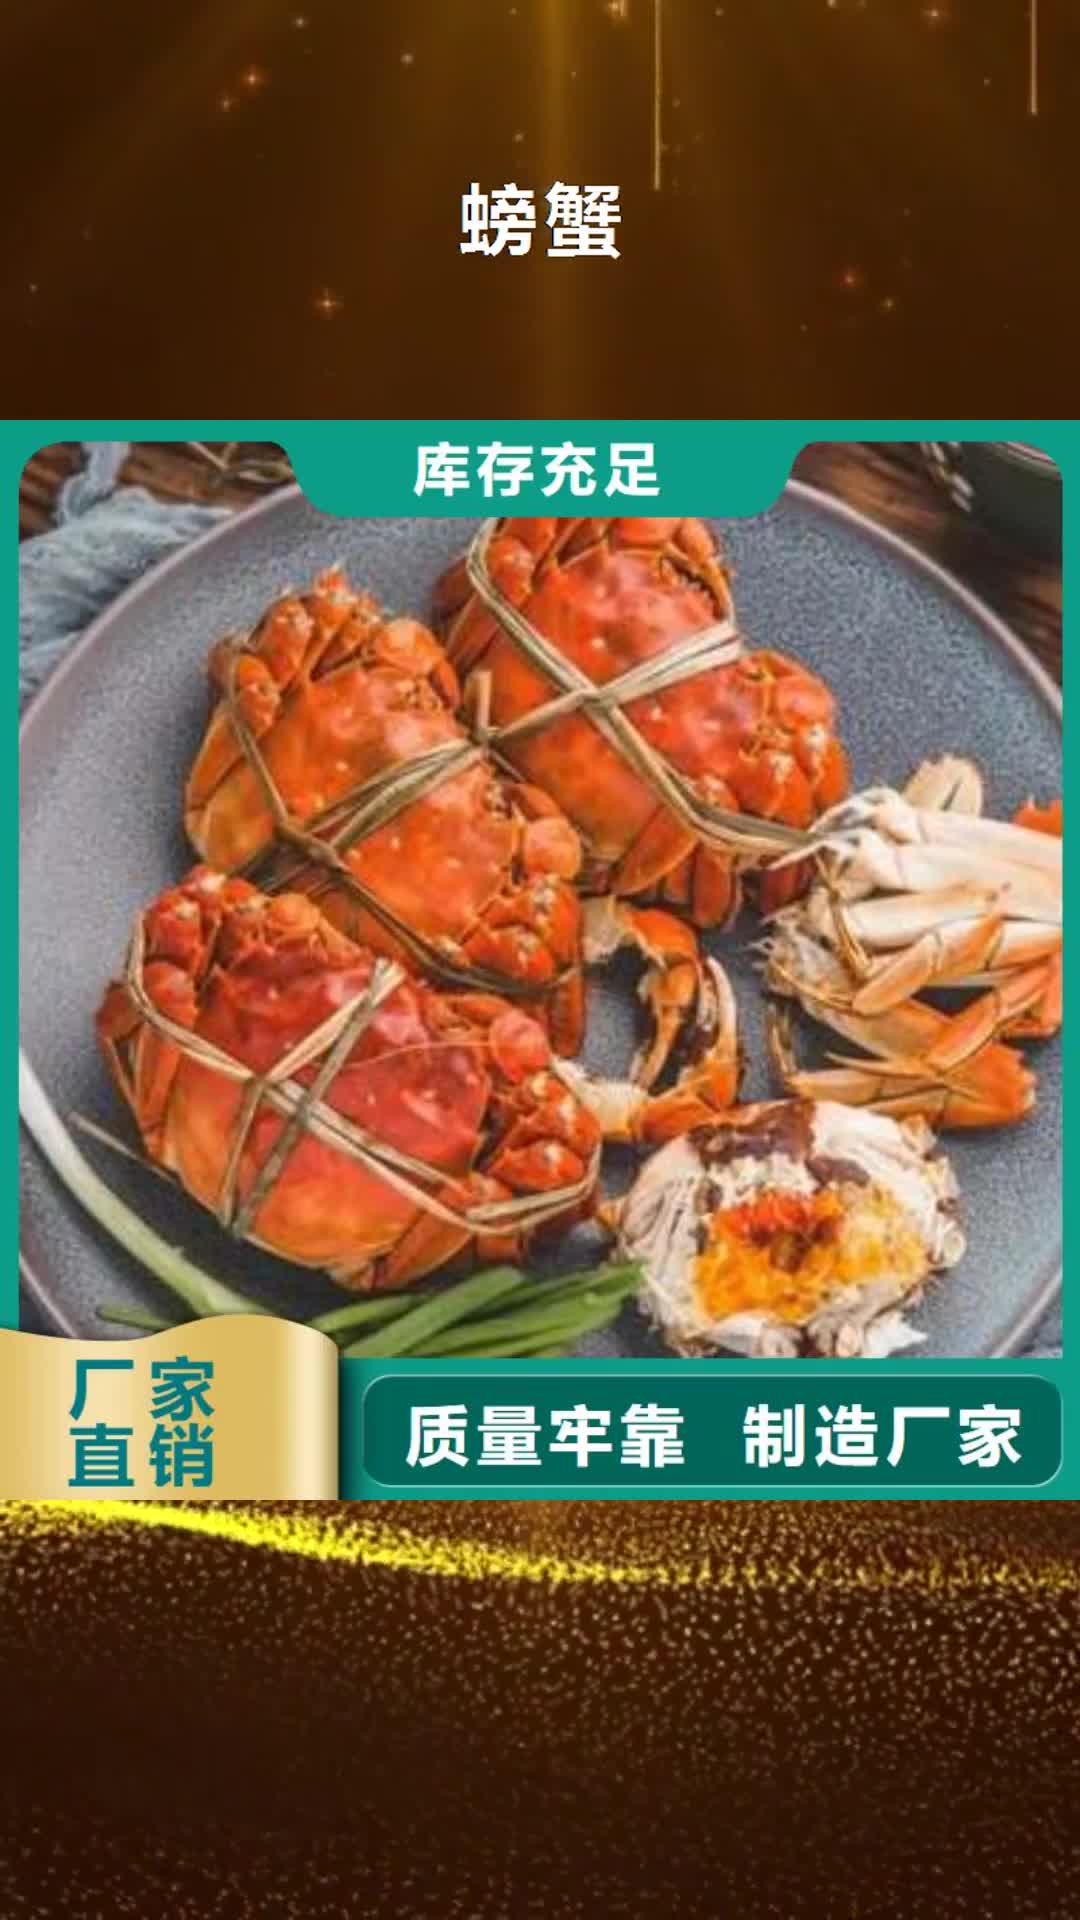 广元【螃蟹】_卖阳澄湖大闸蟹地方常年出售